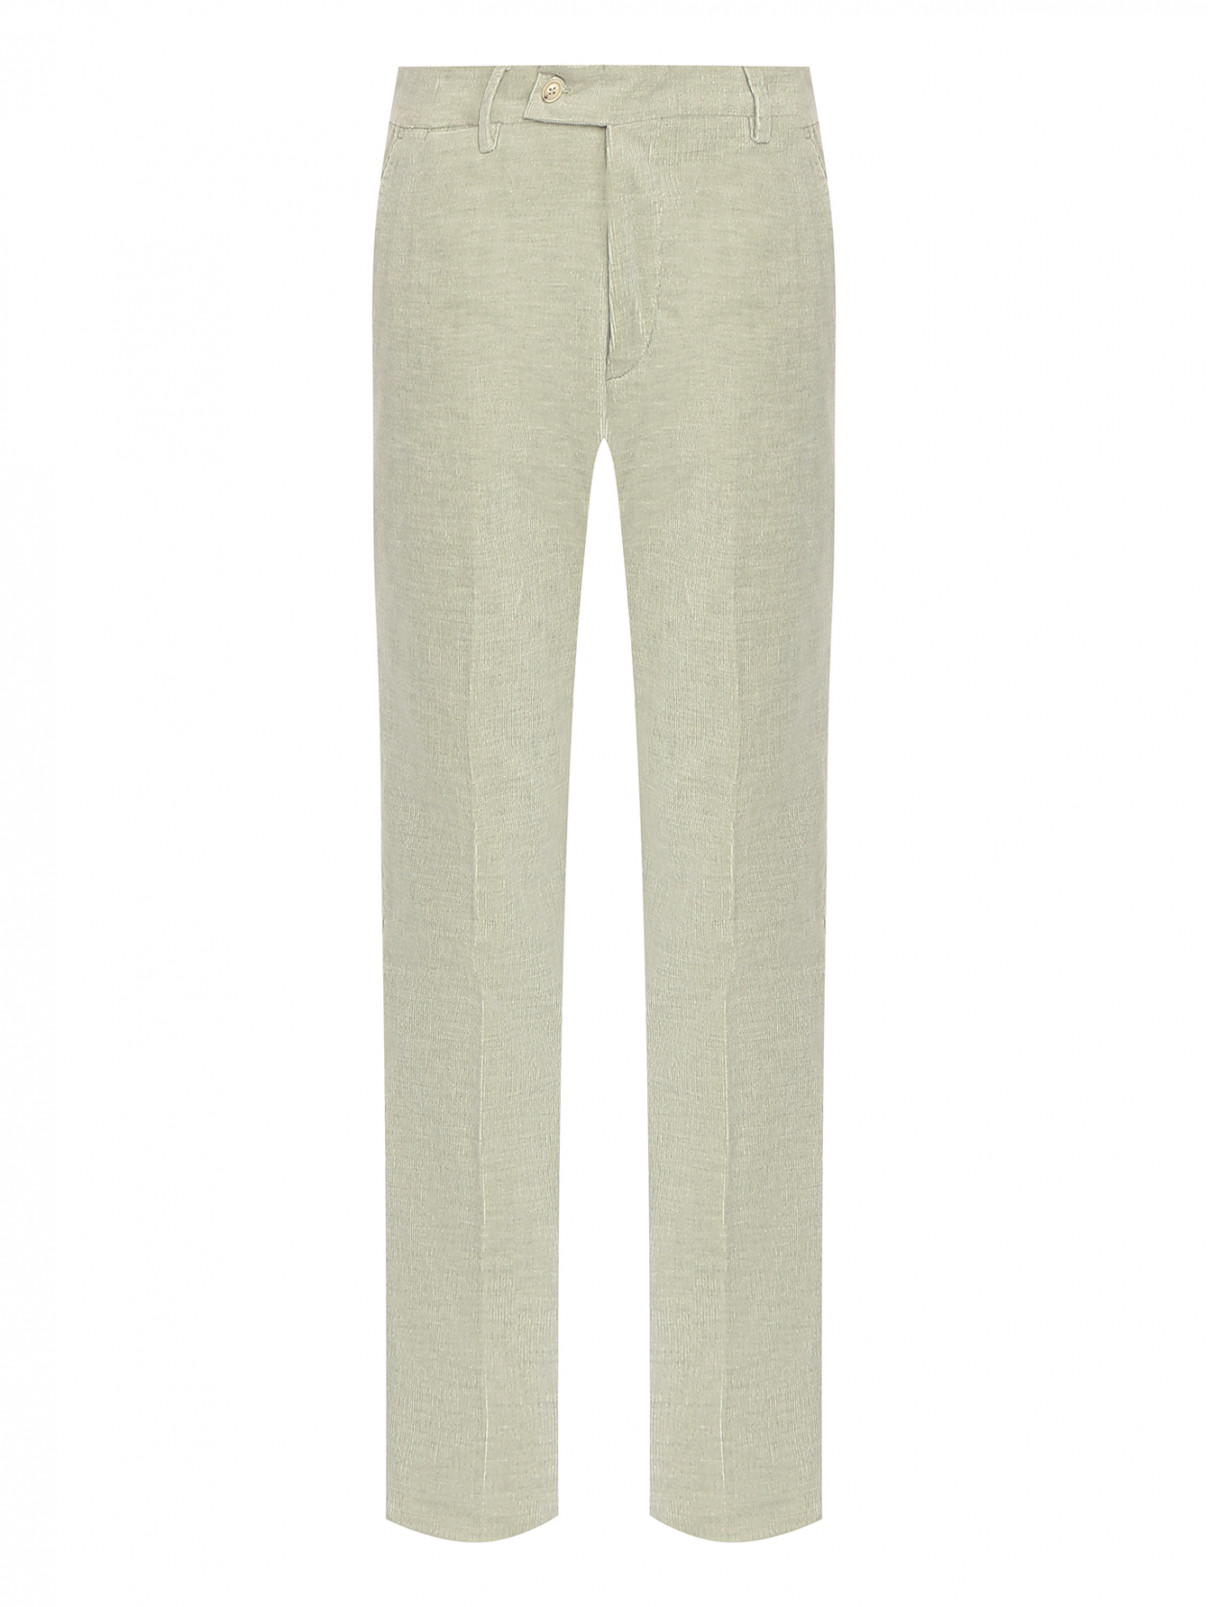 Зауженные вельветовые брюки из хлопка Borrelli  –  Общий вид  – Цвет:  Зеленый